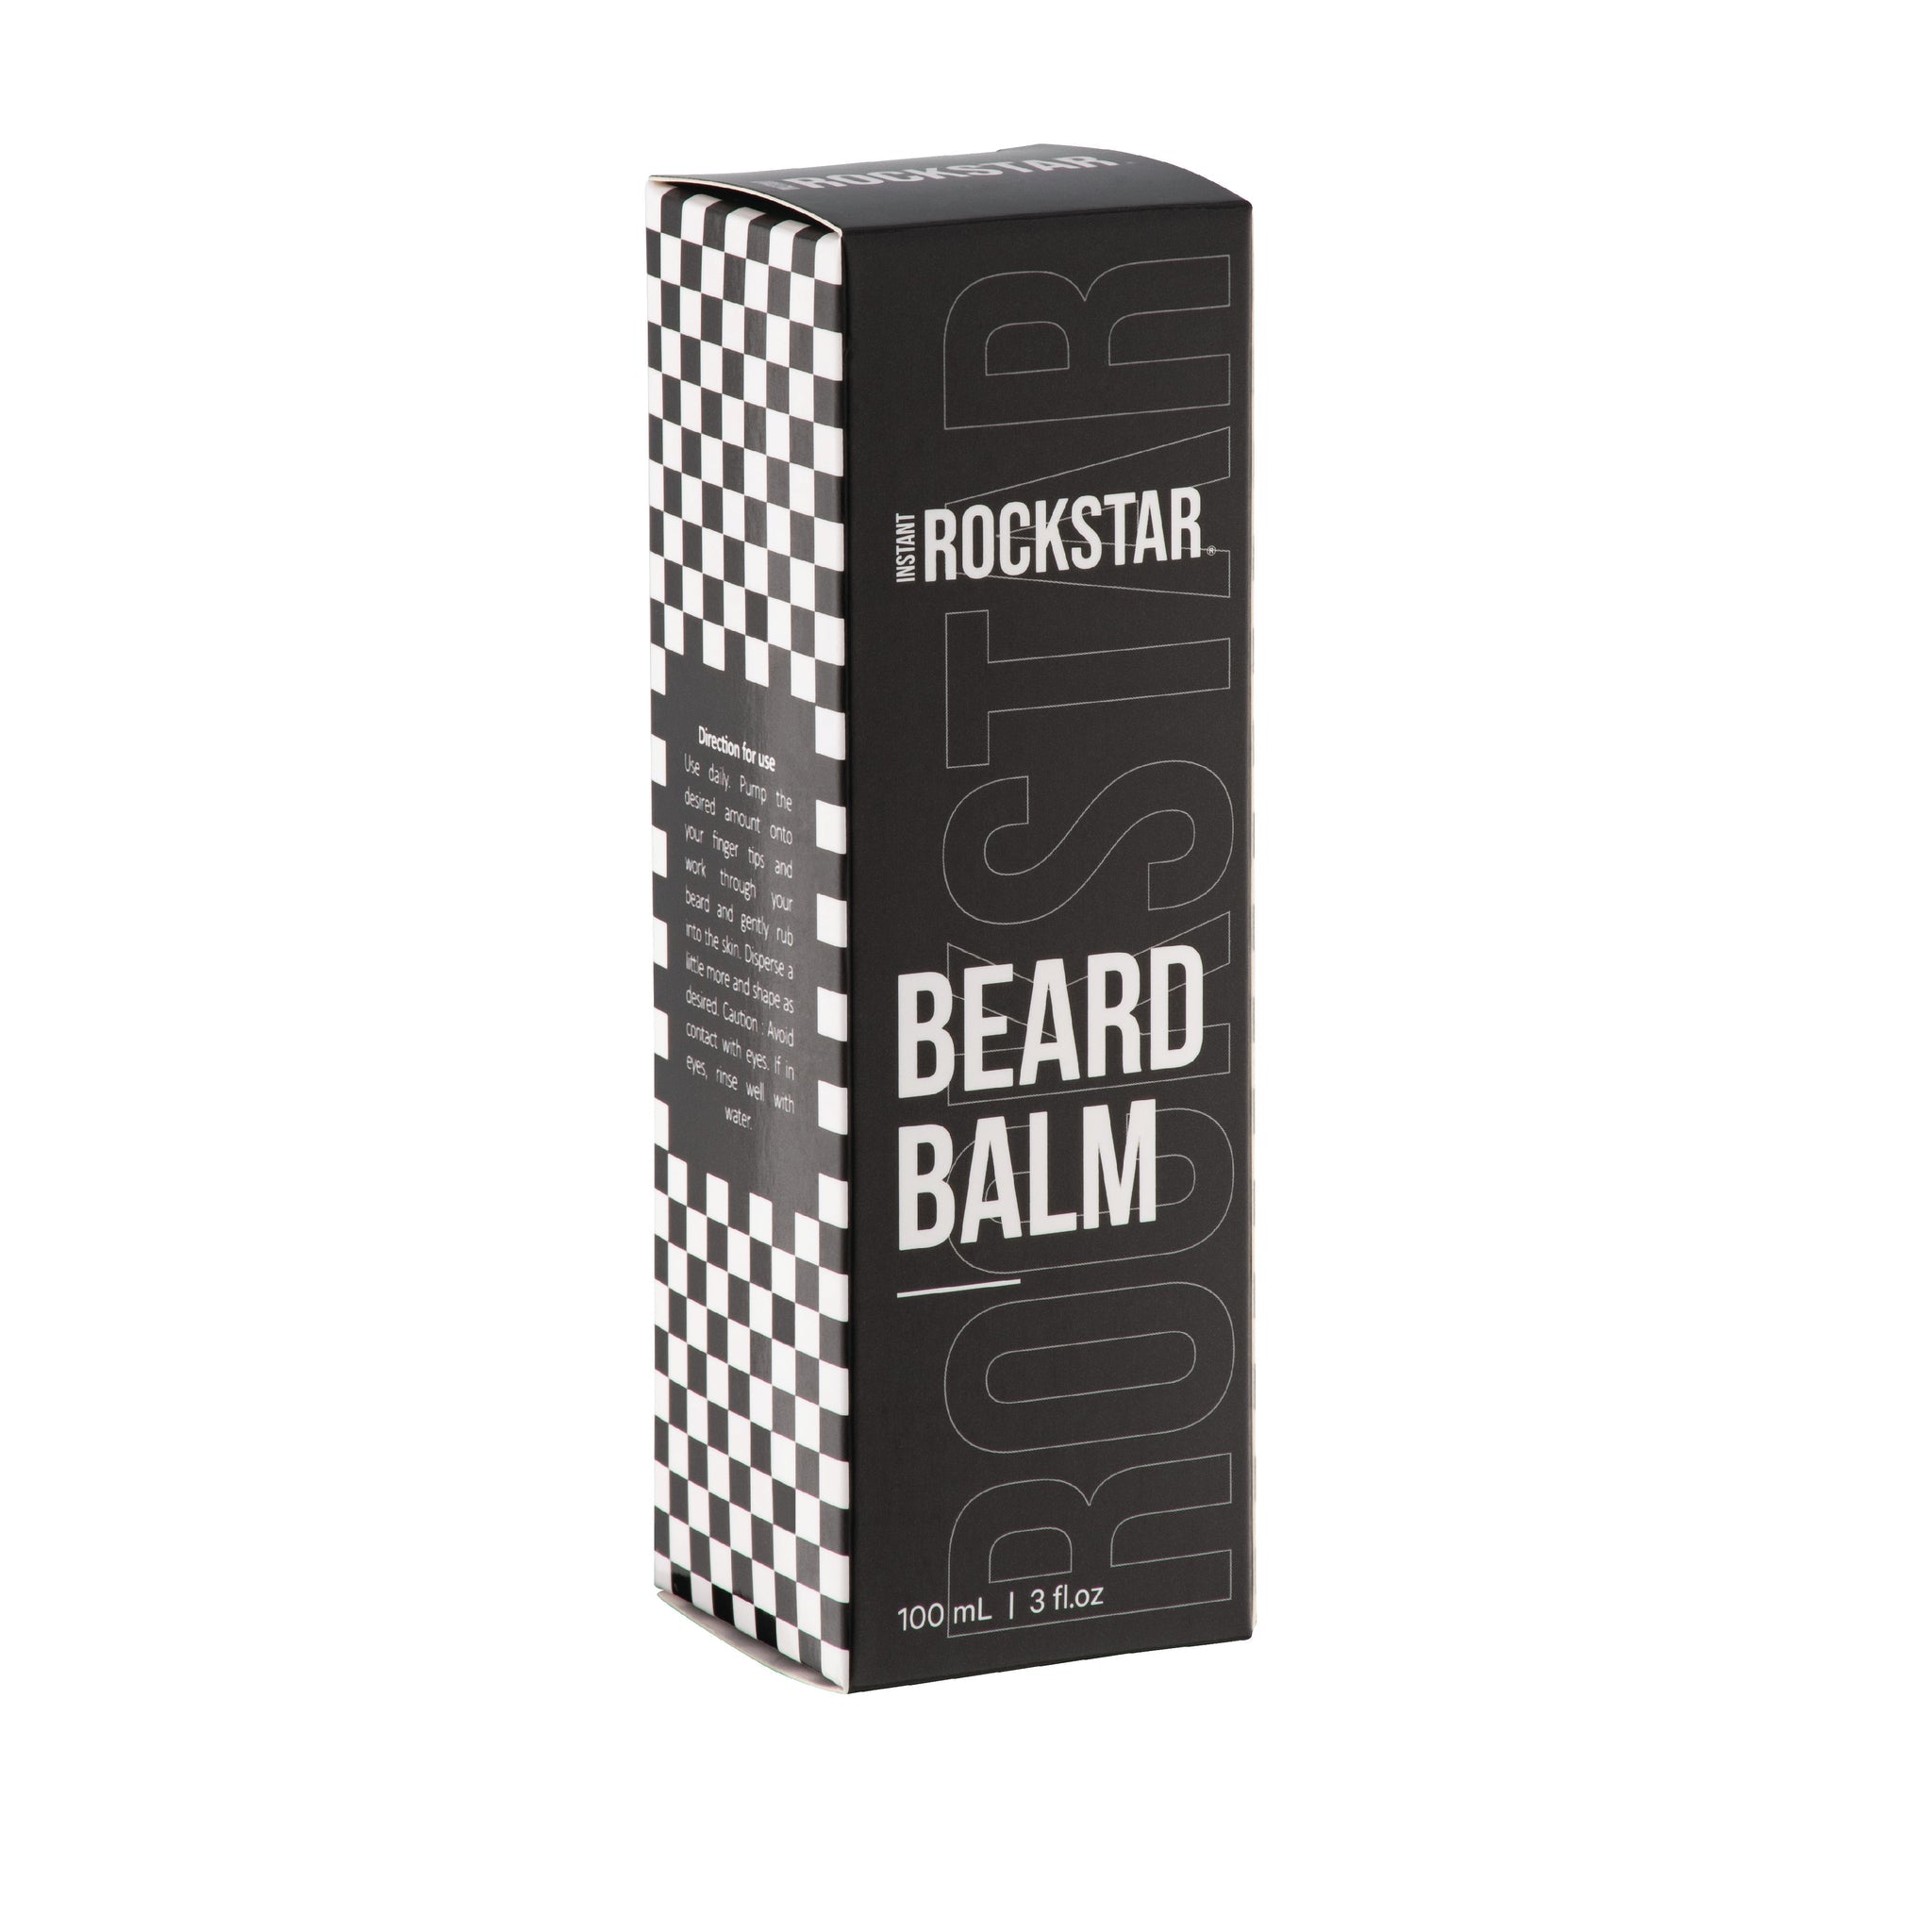 ROCKSTAR Beard Balm 100ml